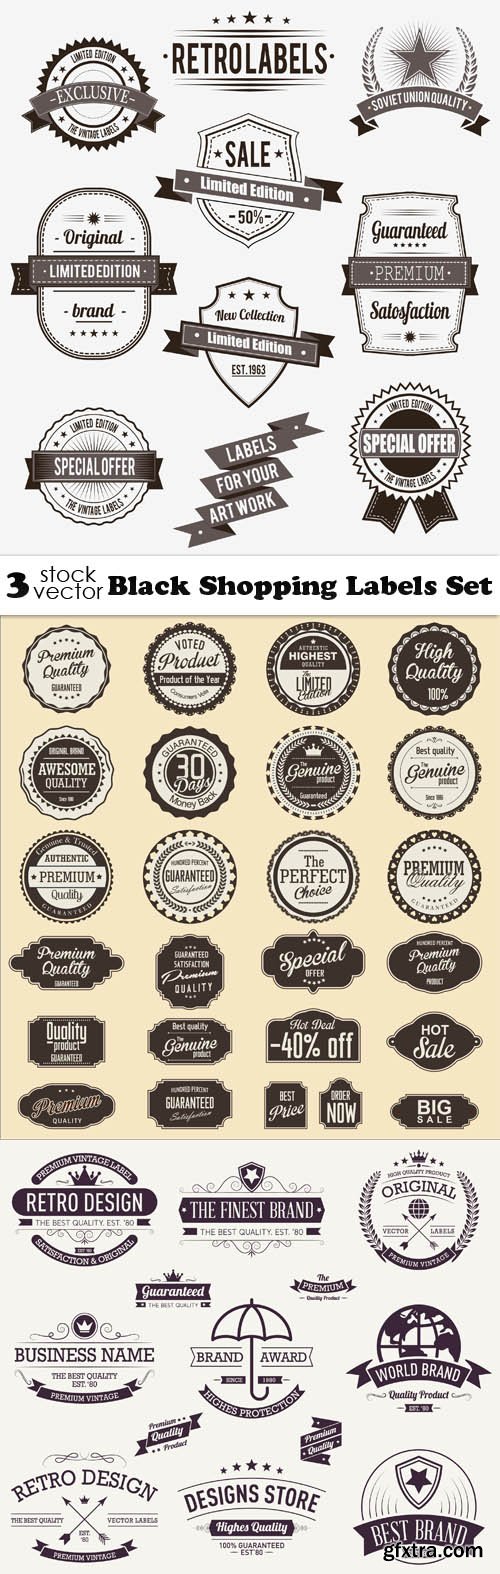 Vectors - Black Shopping Labels Set